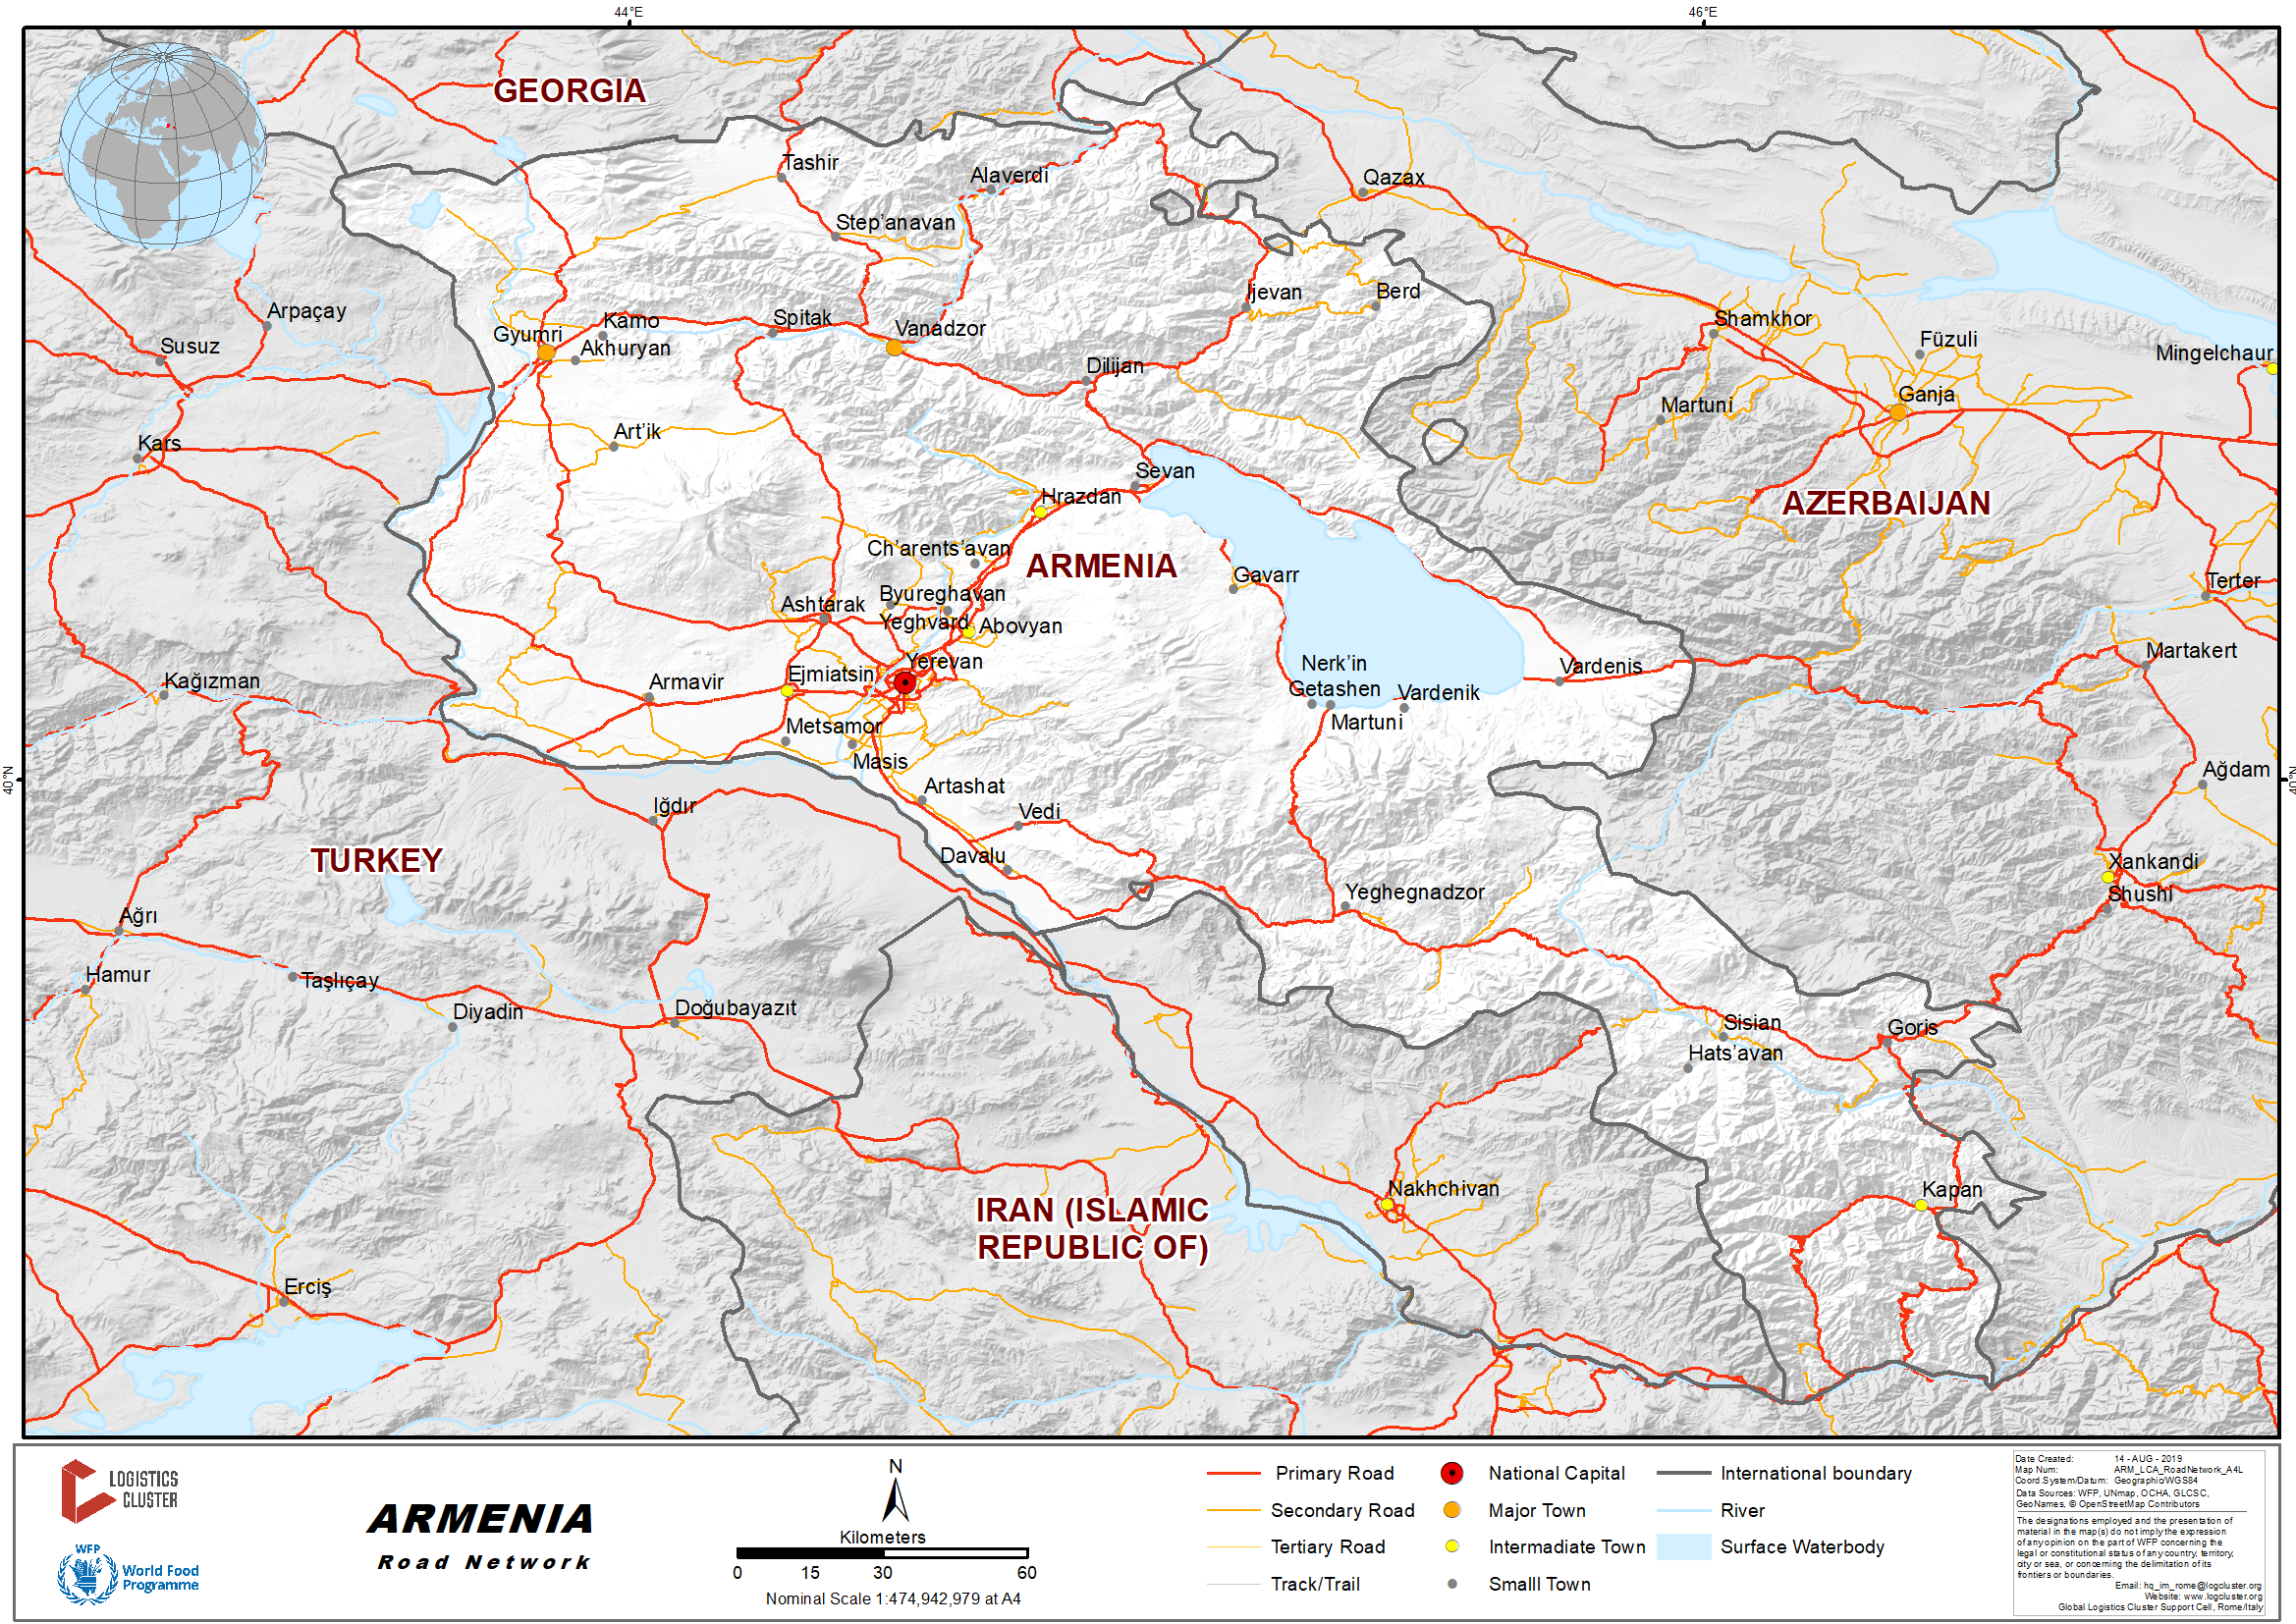 Armenia Map (Road) - Worldometer